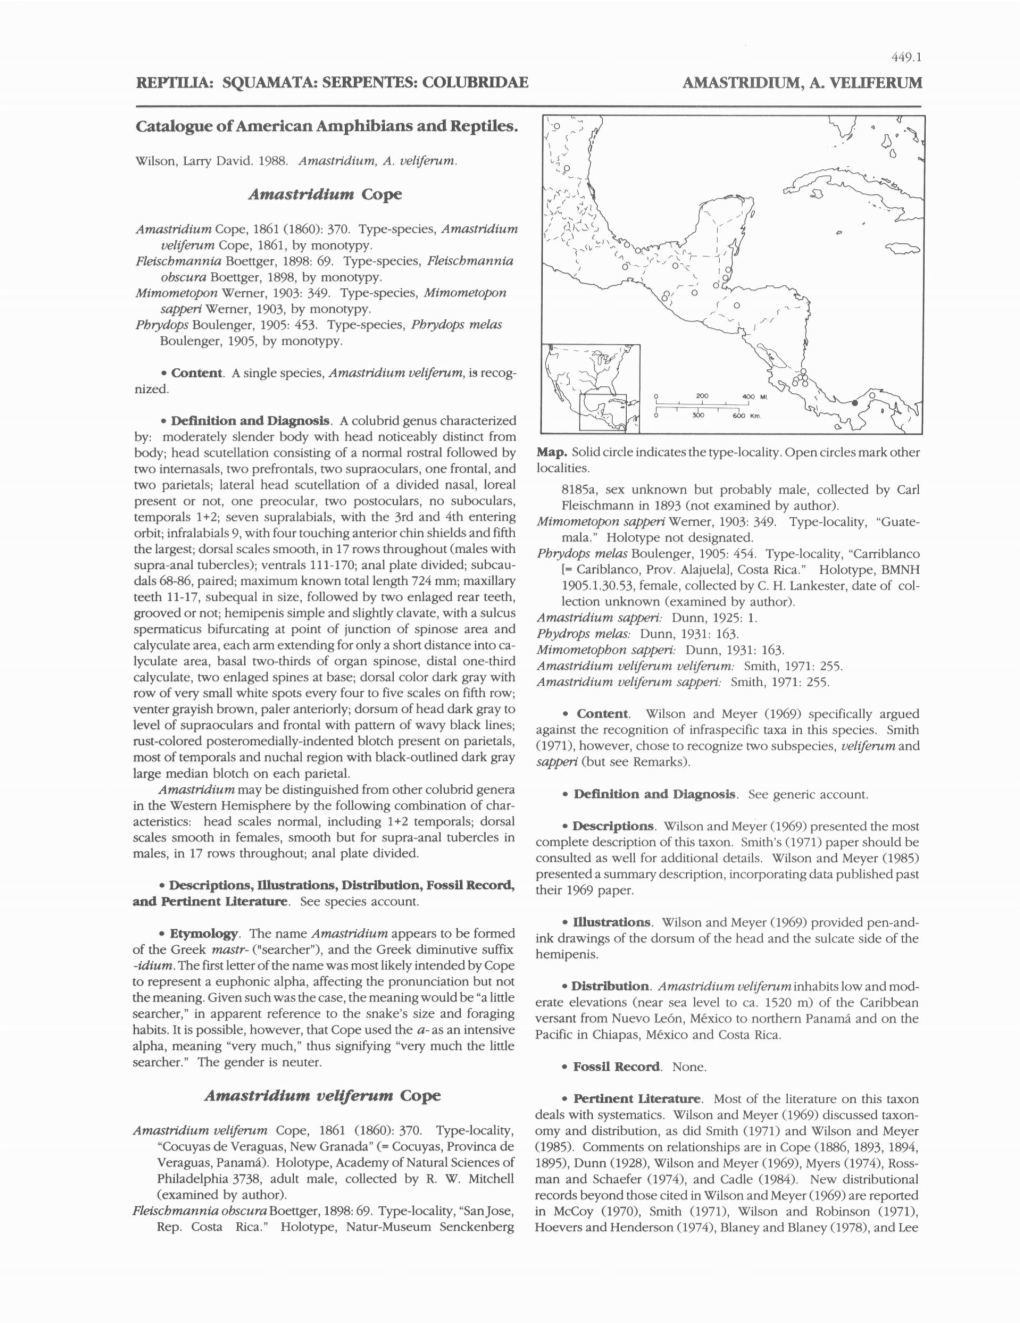 COLUBRIDAE AMASTRIDIUM, A. VELIFERUM Catalogue Of